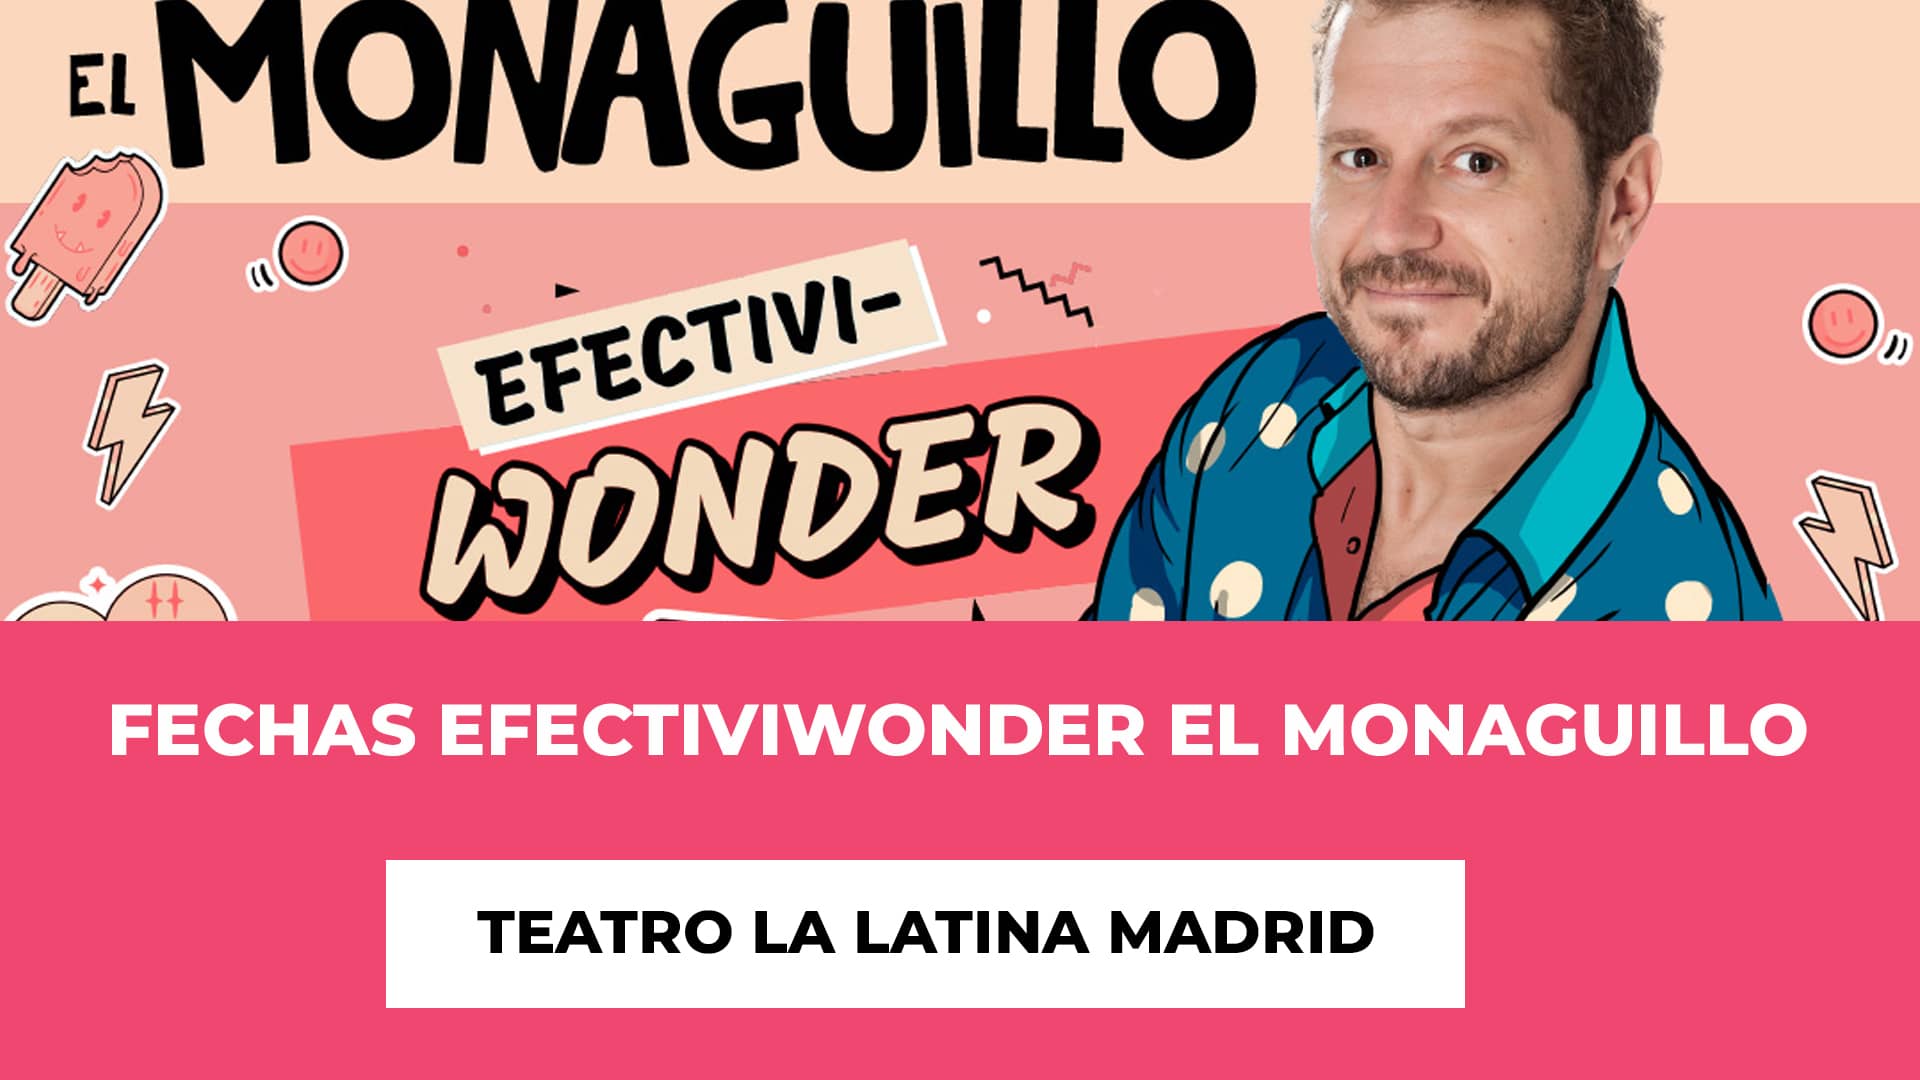 Fechas de EFECTIVIWONDER El Monaguillo Teatro La Latina Madrid - Entre Octubre y Enero - Fechas y Horarios de los monólogos - Precios